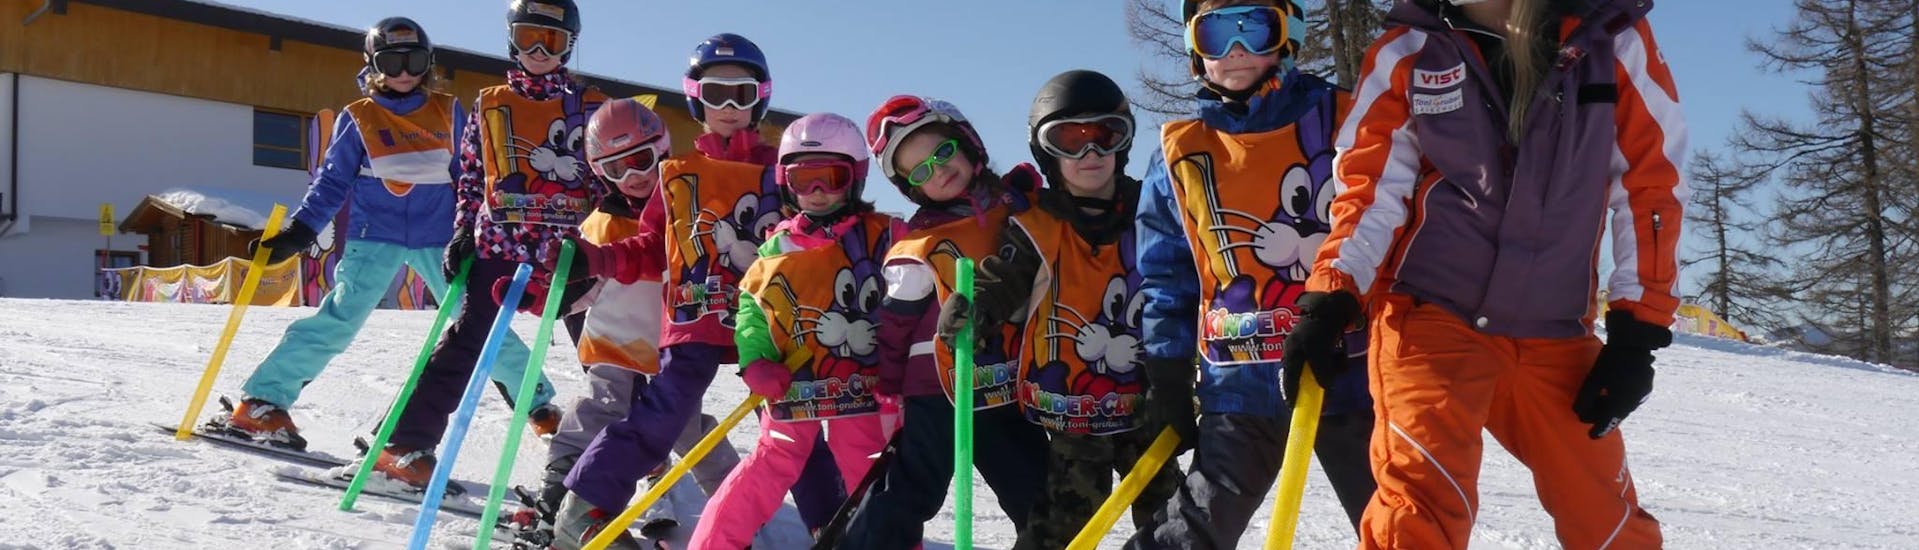 Lezioni di sci per bambini a partire da 4 anni per tutti i livelli con Skischule Toni Gruber.